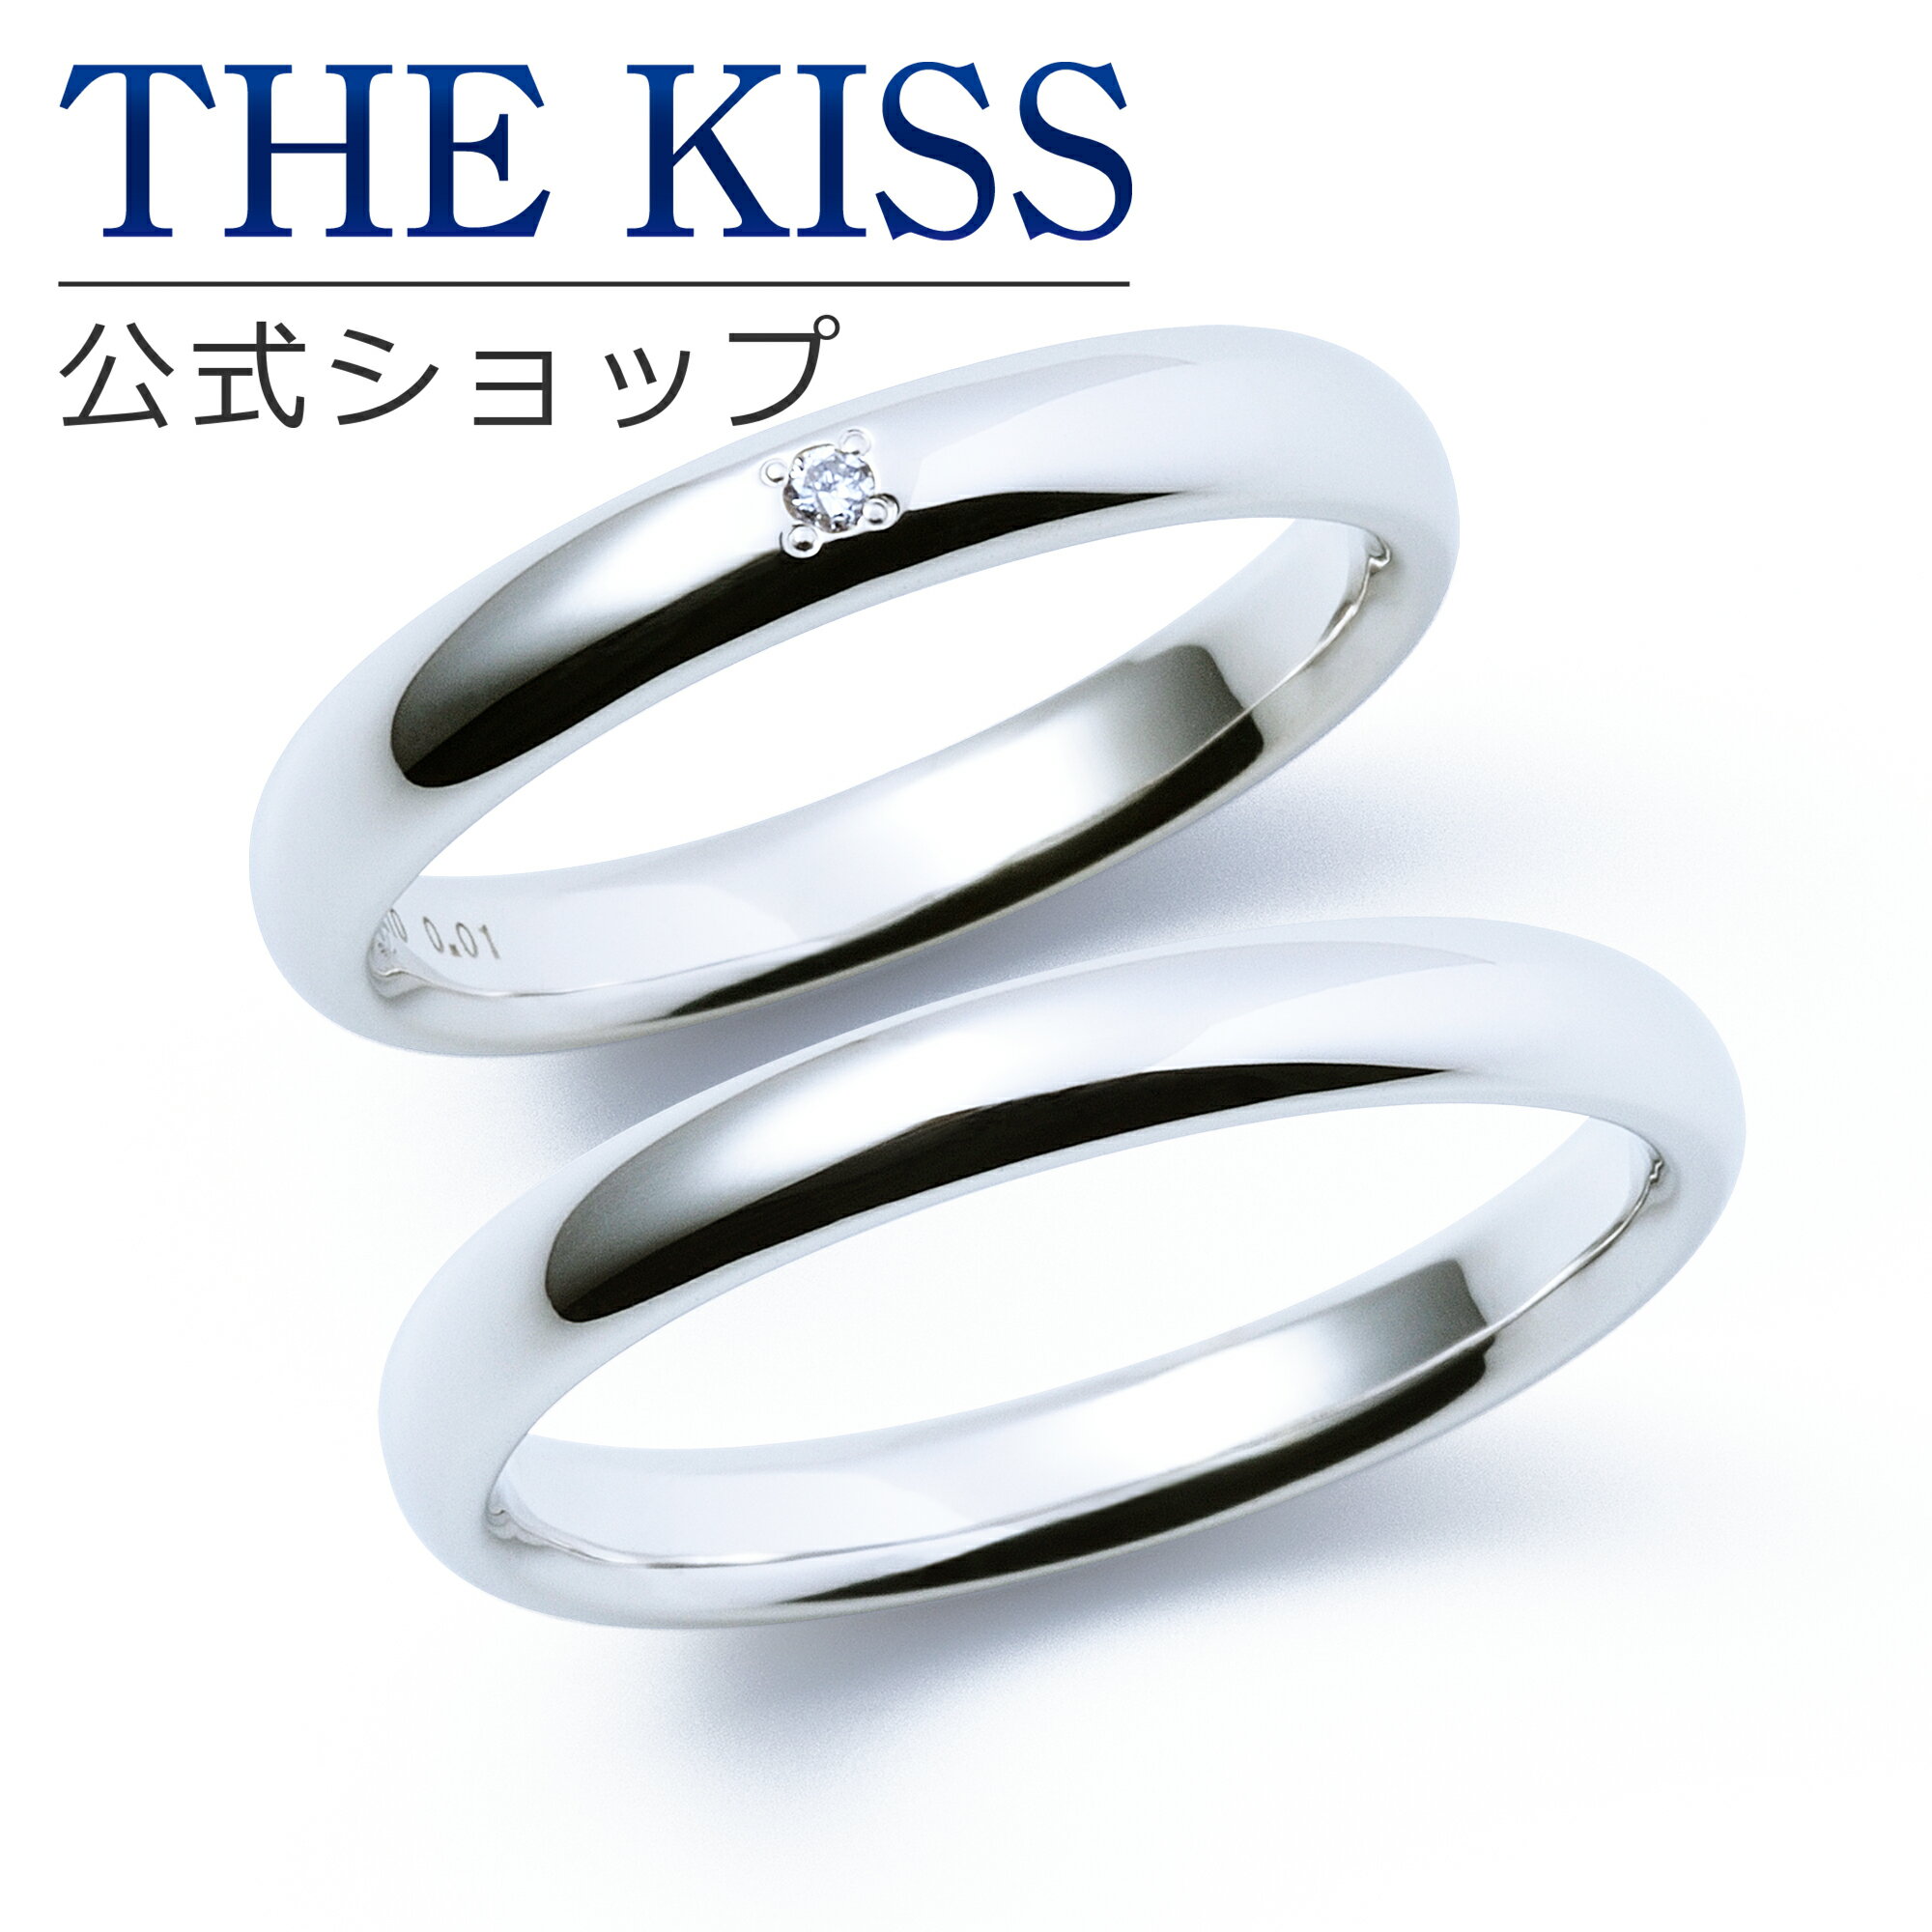 【ラッピング無料】【刻印無料】【THE KISS Anniversary】 K10 ホワイトゴールド マリッジ リング 結婚指輪 ペアリング wg THE KISS ザキッス リング・指輪 7621122041-7621122042 セット シンプル 男性 女性 2個セット 甲丸 母の日